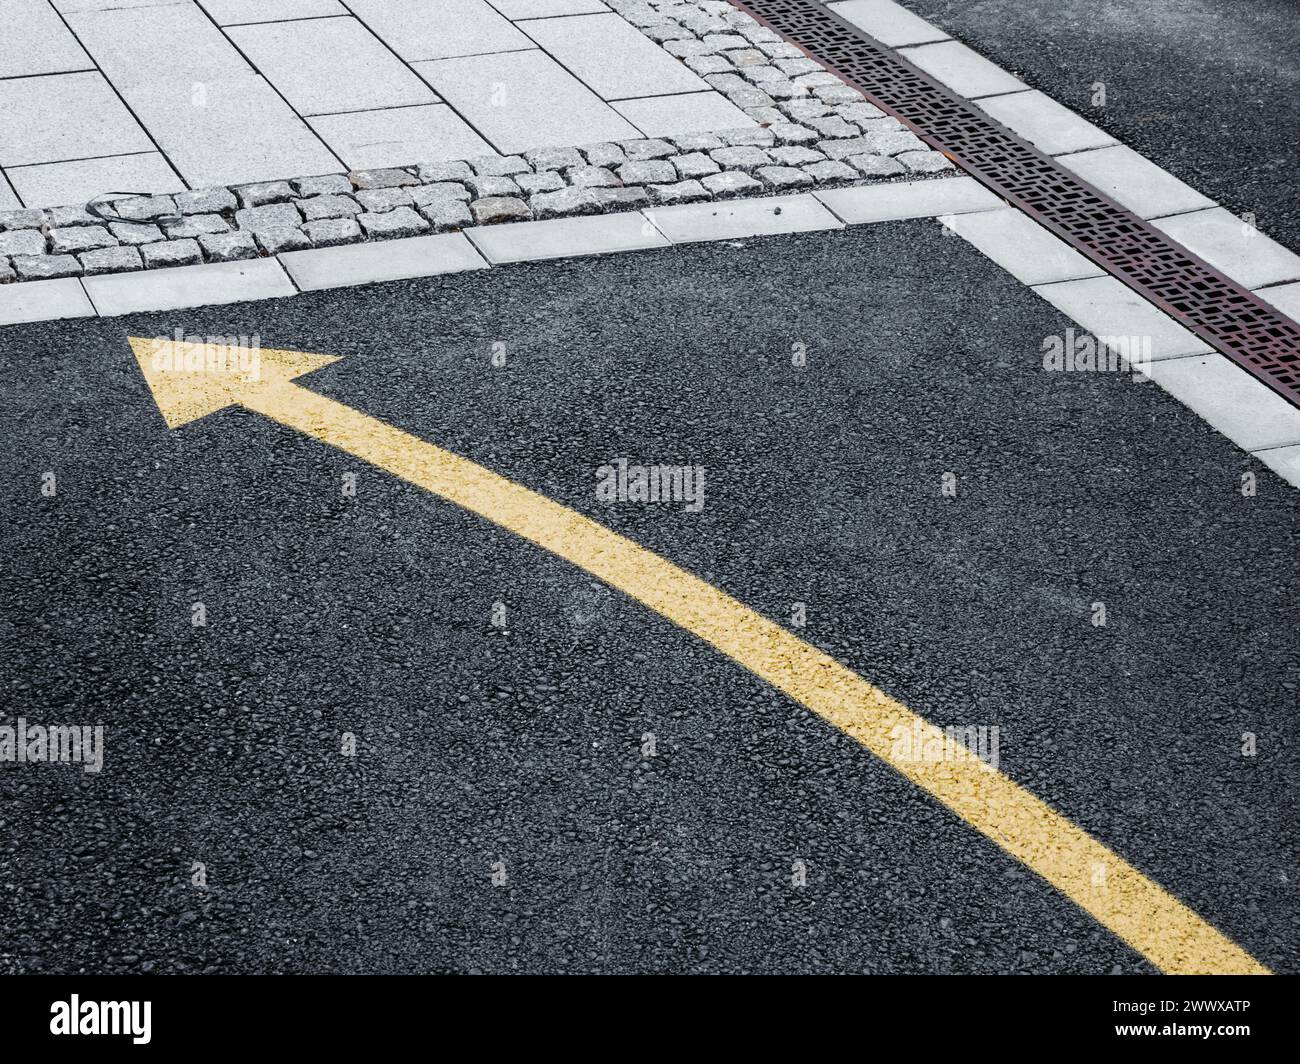 Une flèche jaune fraîchement peinte pointe directement sur l'asphalte foncé d'une rue suédoise, indiquant la direction du flux de circulation ou guidant les piétons. Banque D'Images